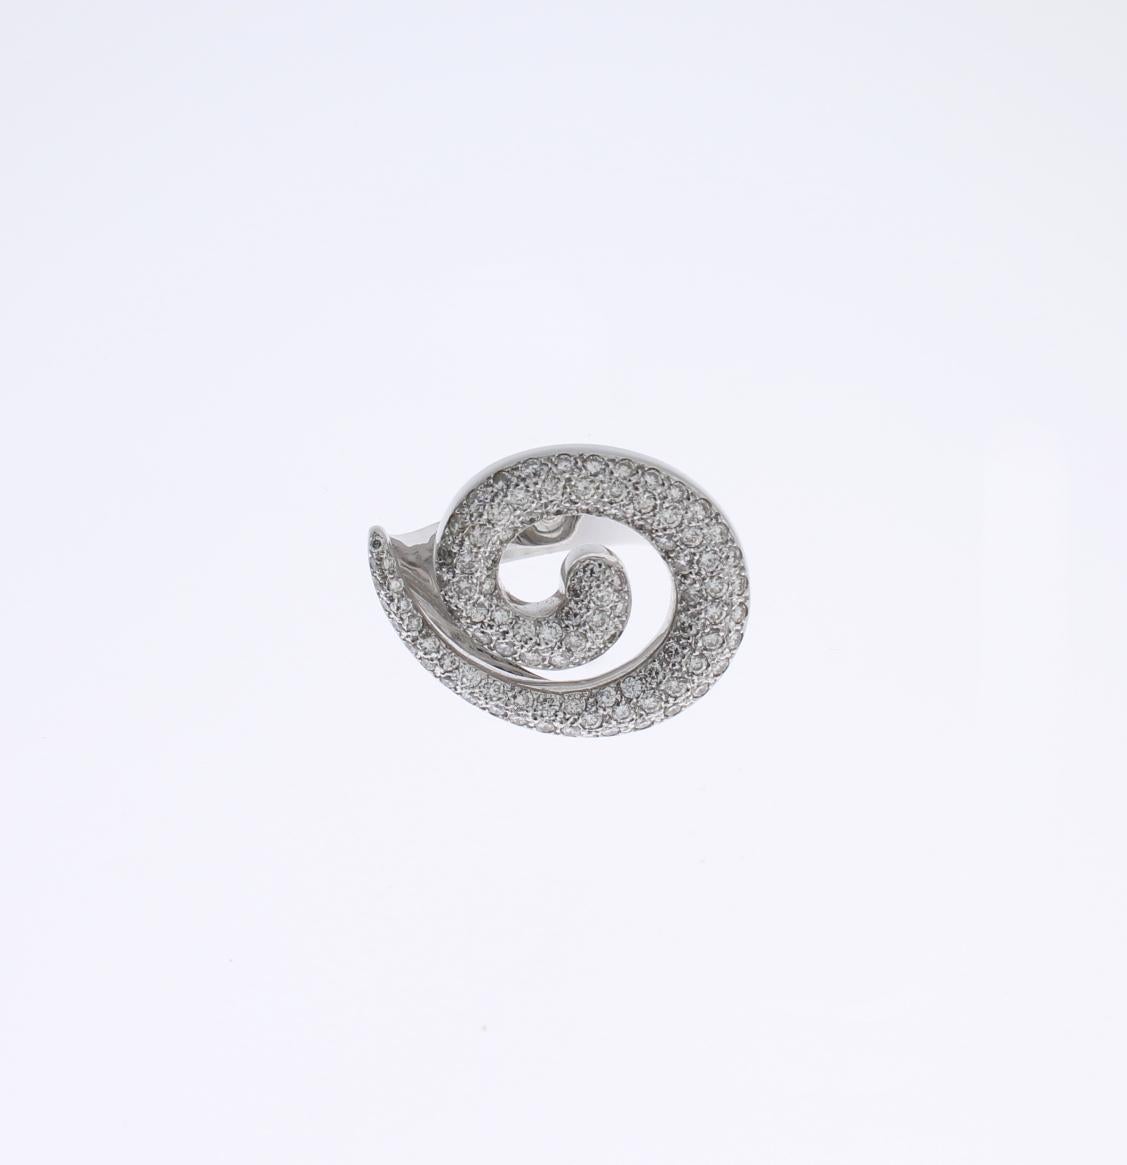 Spiralförmiges Design, 2000er Jahre. Pavé-Fassung mit Diamanten im Brillantschliff mit einem Gesamtgewicht von 1,87 Karat. Montiert in 18 K Weißgold.
Gekennzeichnet mit dem Reinheitsgrad 750, gestempelt CIM 2005. Gesamtgewicht: 20,21 Gramm.